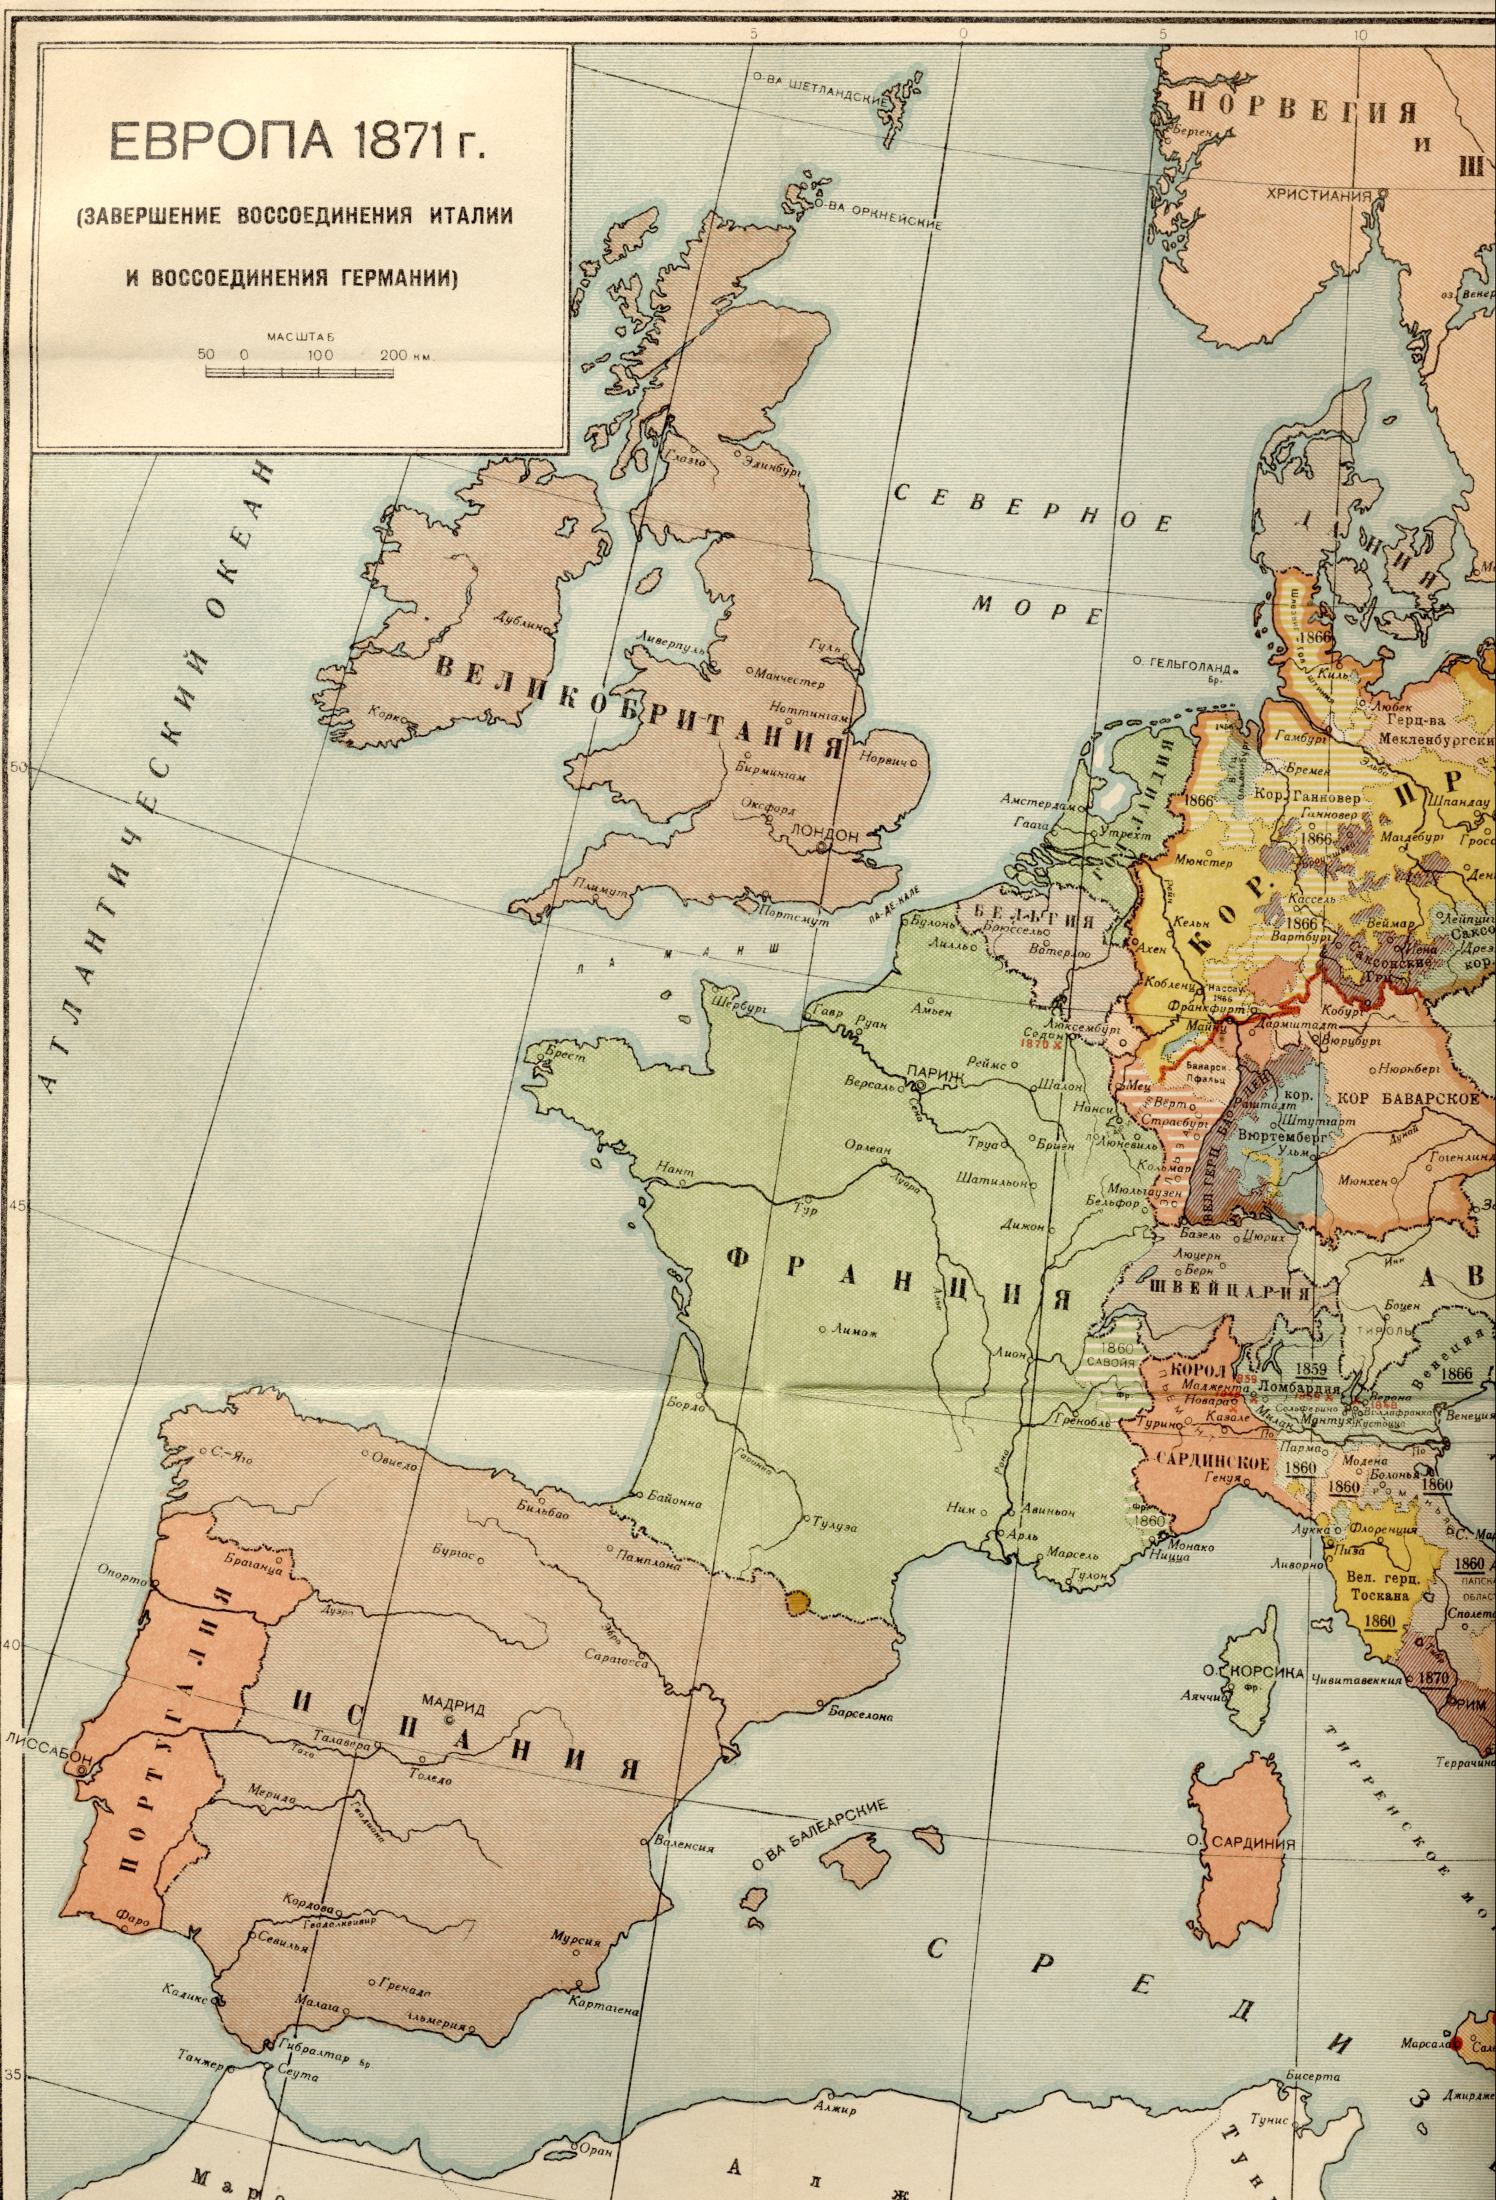 1871 год.Політіческая карта світу - карта Європи 1871 року - завершення об'єднання Італії і возз'єднання Німеччини